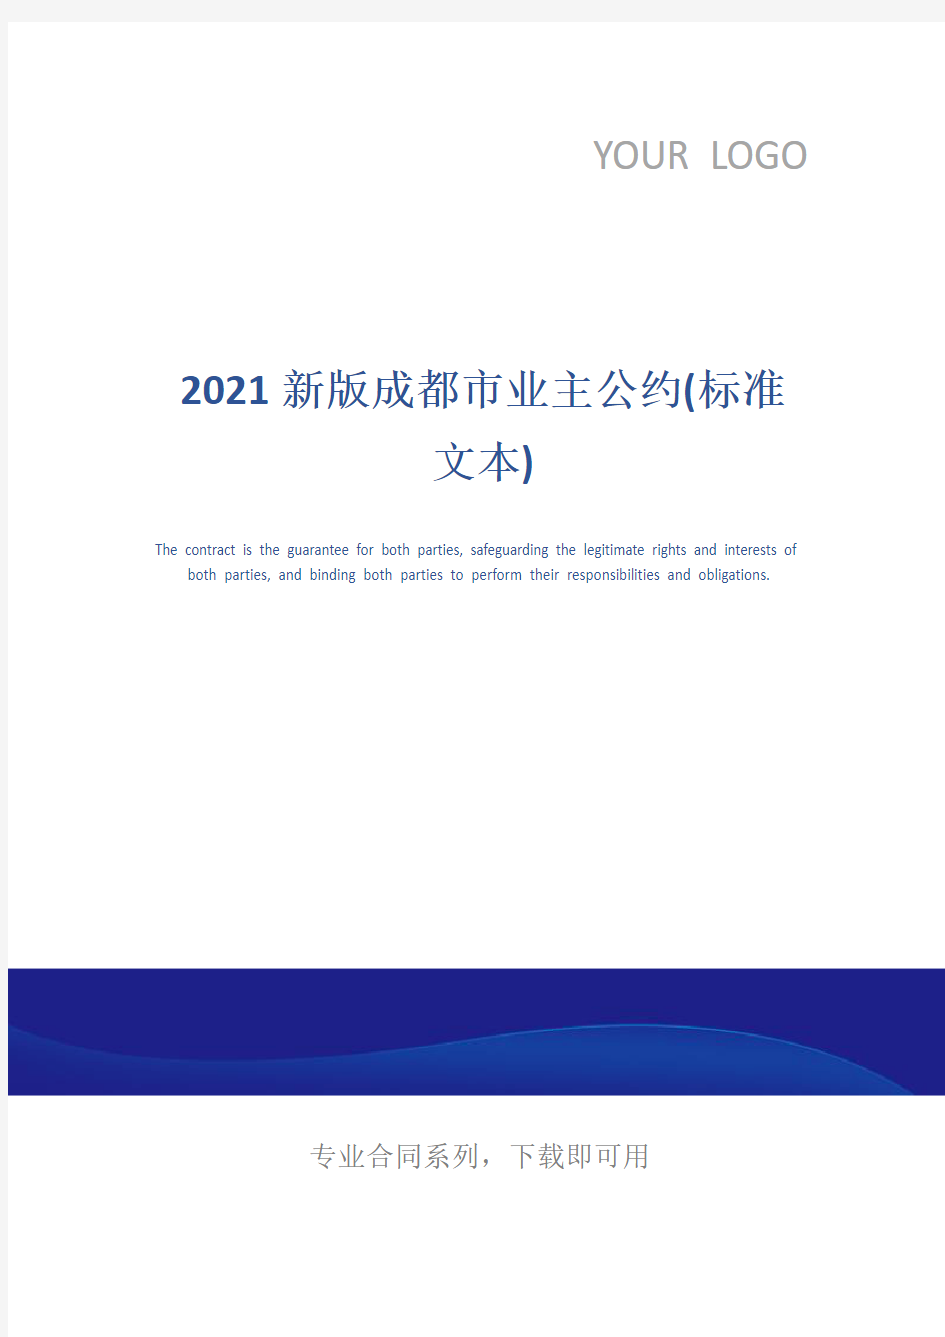 2021新版成都市业主公约(标准文本)